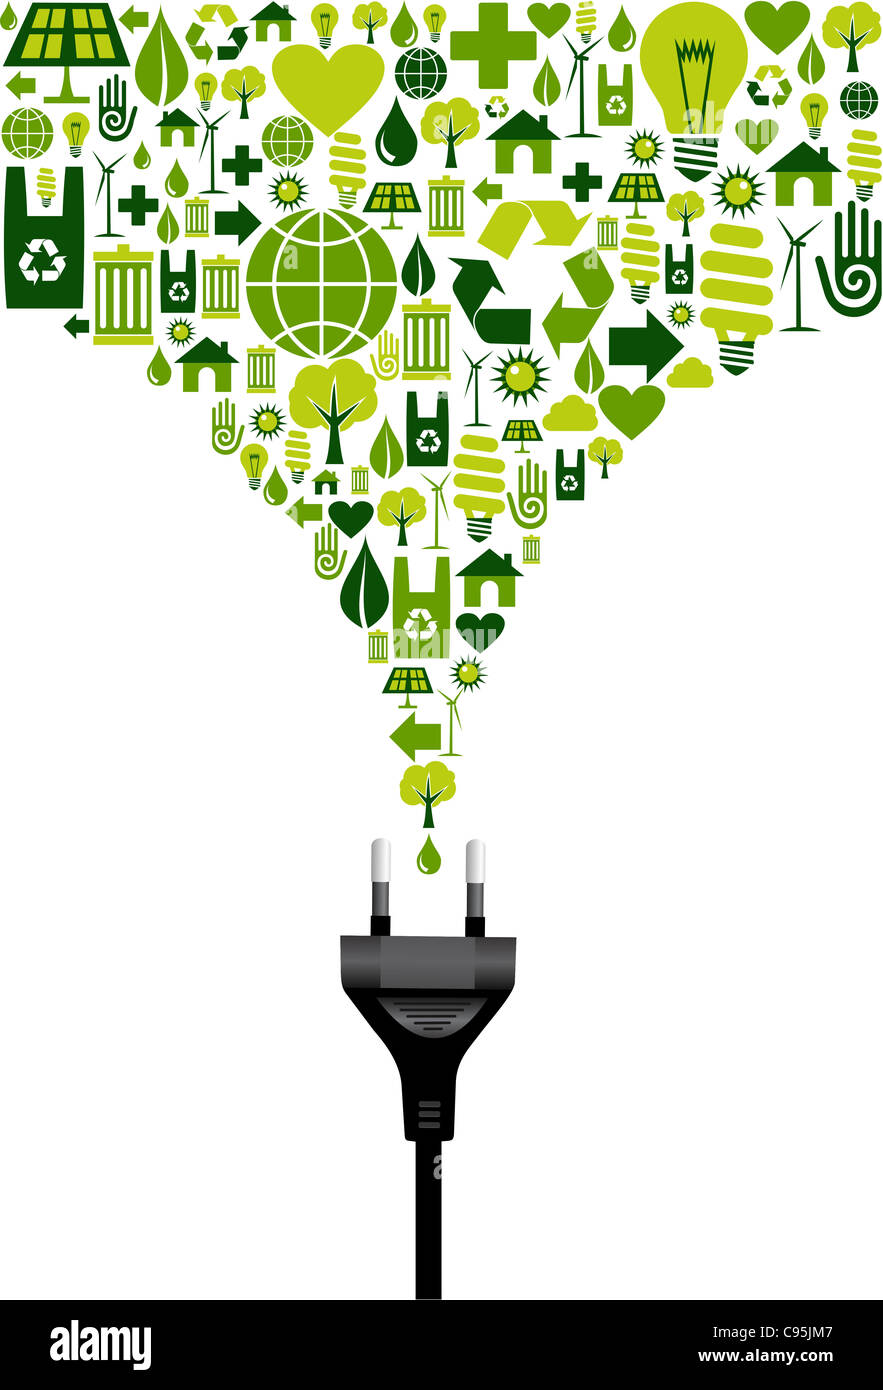 Conjunto de iconos ambiental splash verde del enchufe de alimentación eléctrica cable sobre fondo blanco. Archivo vectorial disponible. Foto de stock